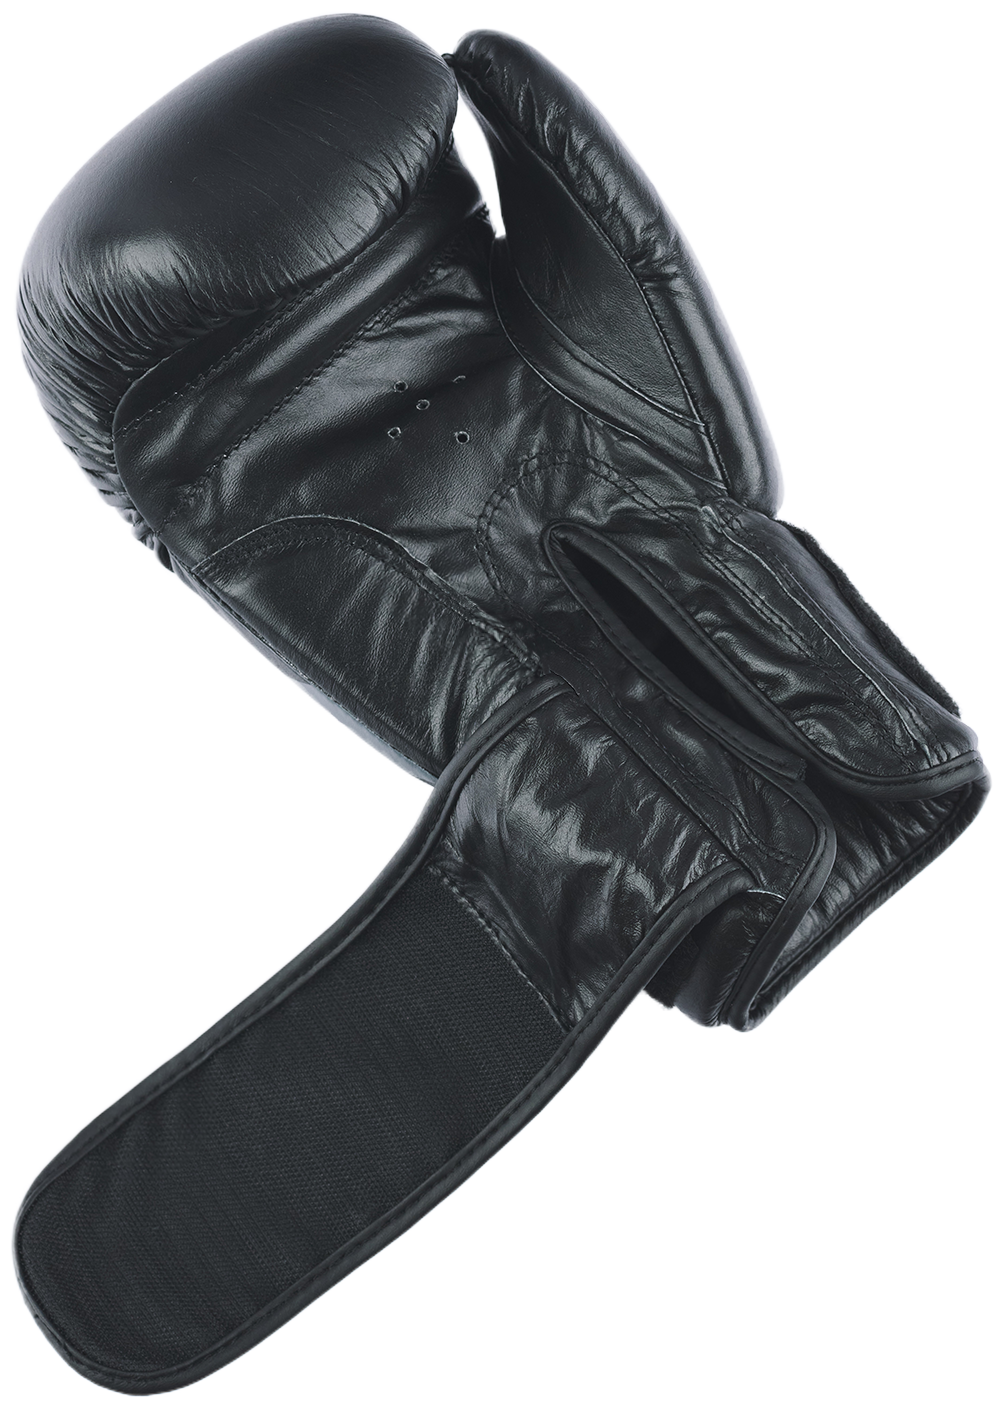 Перчатки боксерские INSANE ARES, кожа, черный